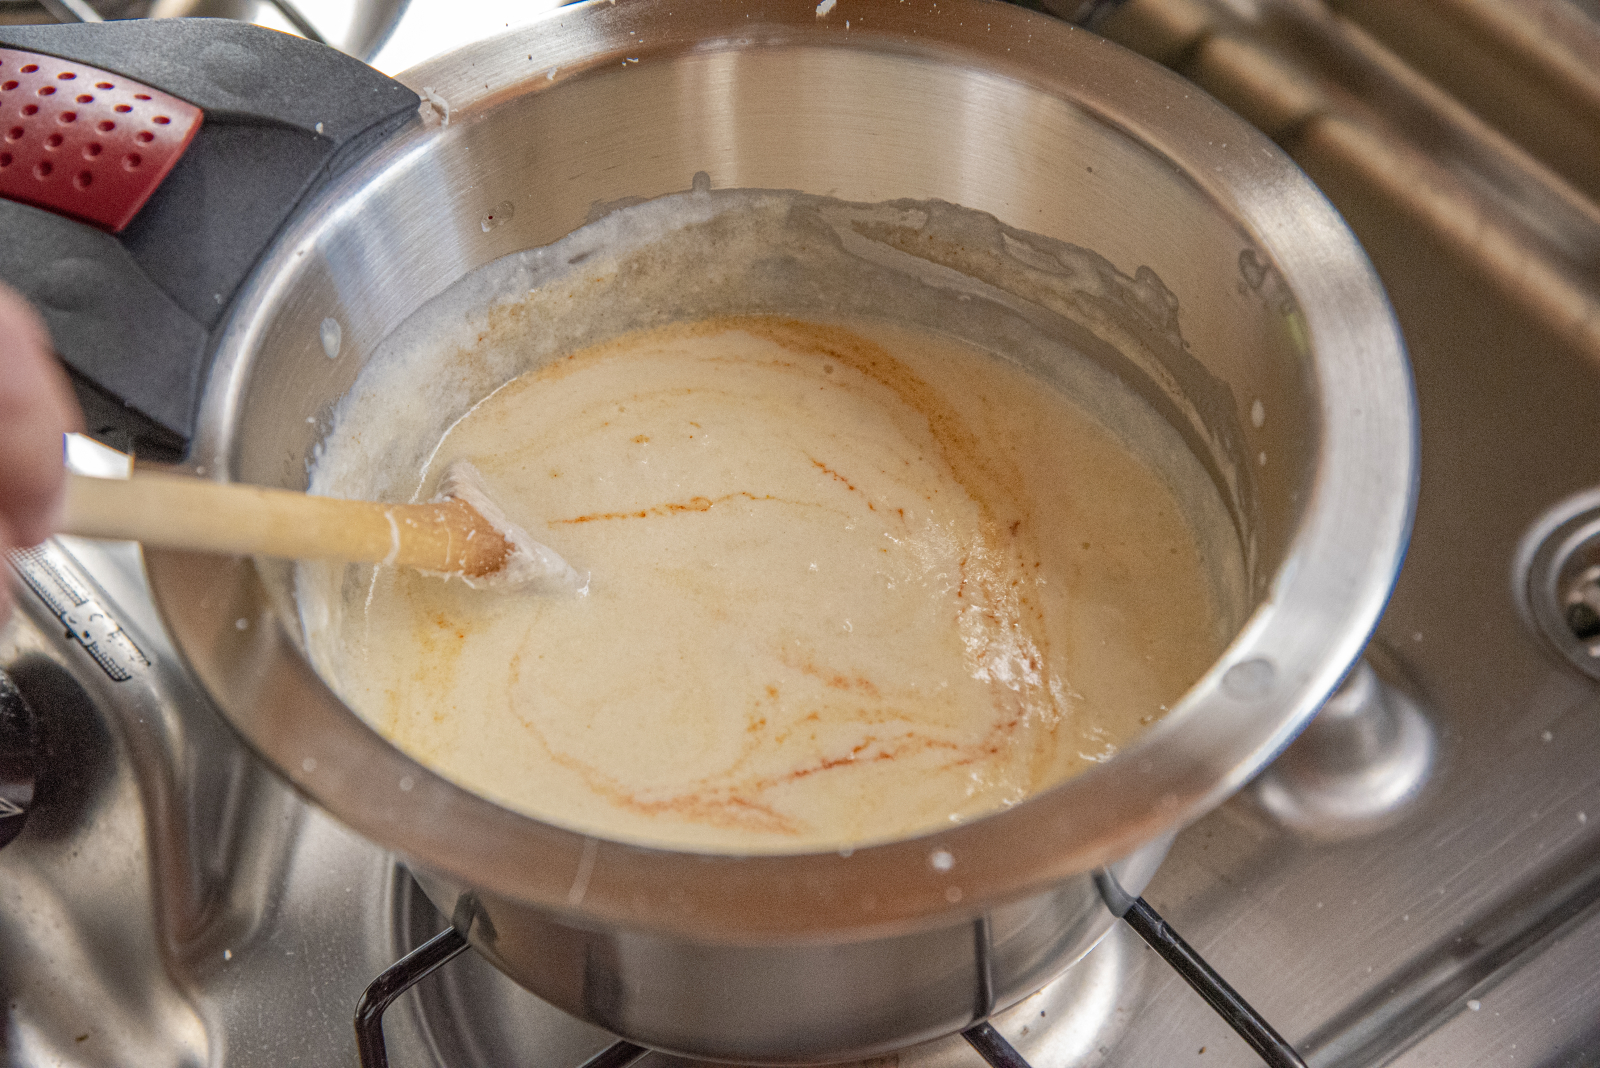 In die Milch-Sahne-Mischung dürfen ruhig mehrere Spritzer Tabasco, da die Nudeln die Schärfe binden.